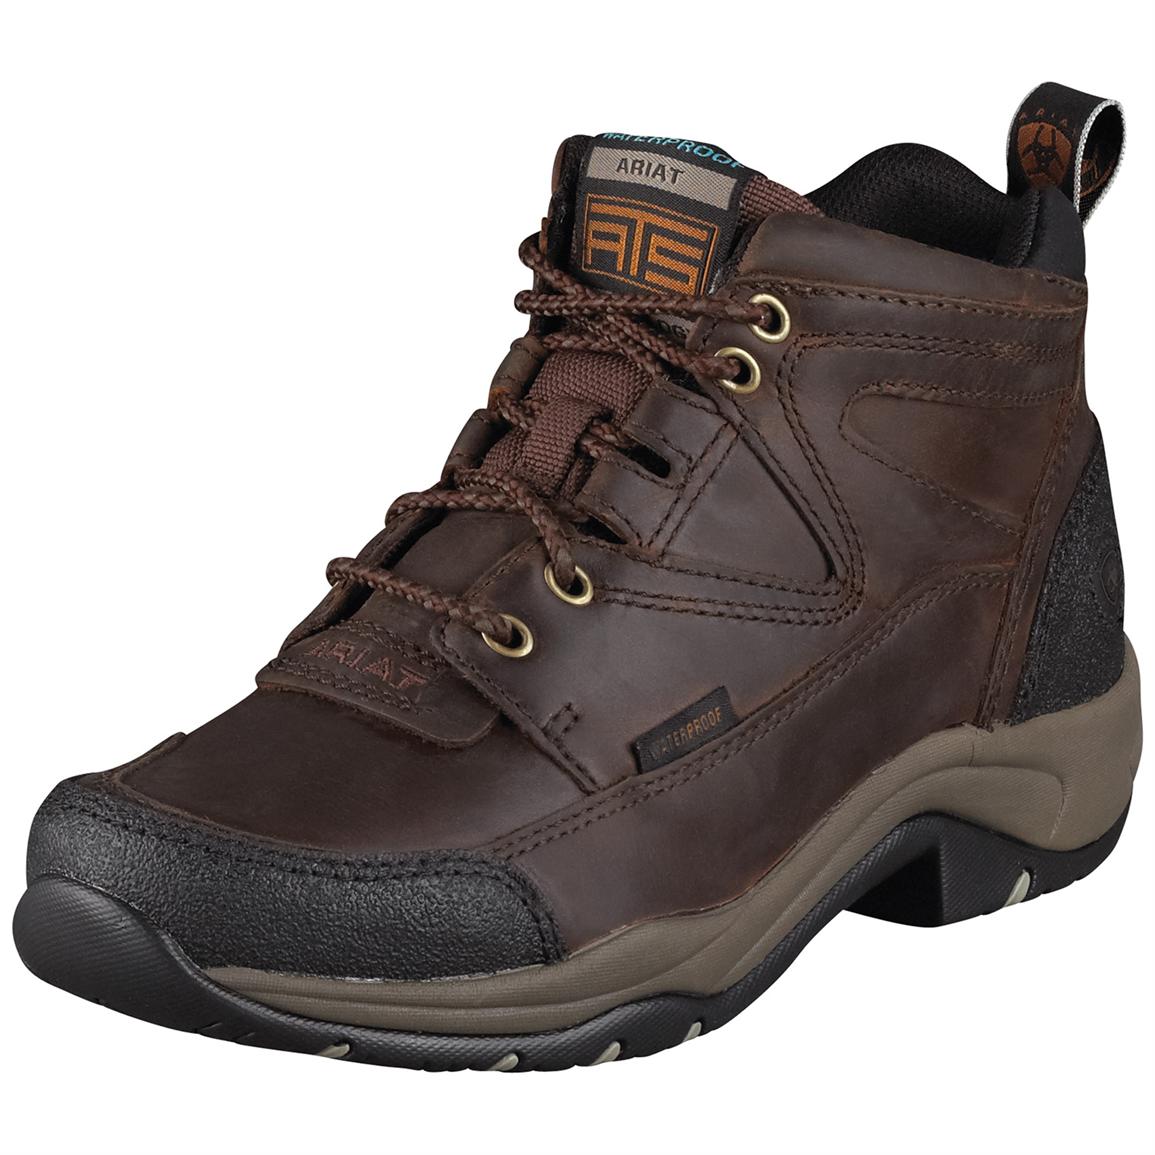 Ariat Women's Terrain H2O Waterproof Hiking Boots - 282341, Hiking ...